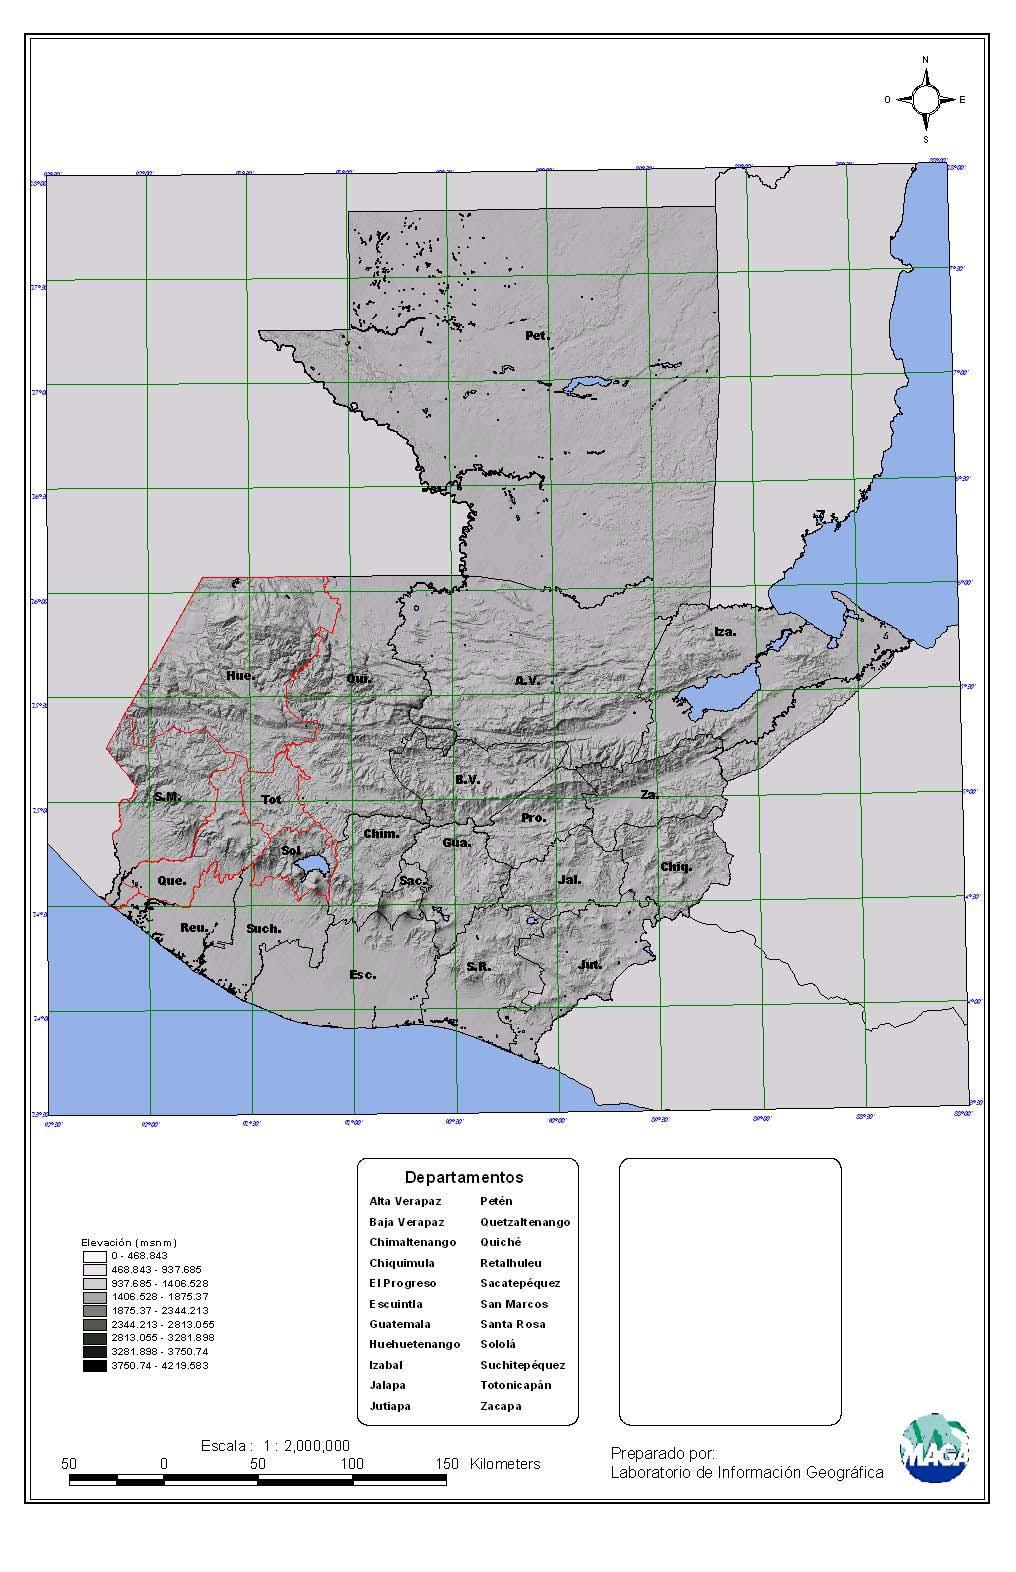 A MAPA DE LA ZONA DEL PROGRAMA Fuente: MAGA, Sistema de información geográfica.